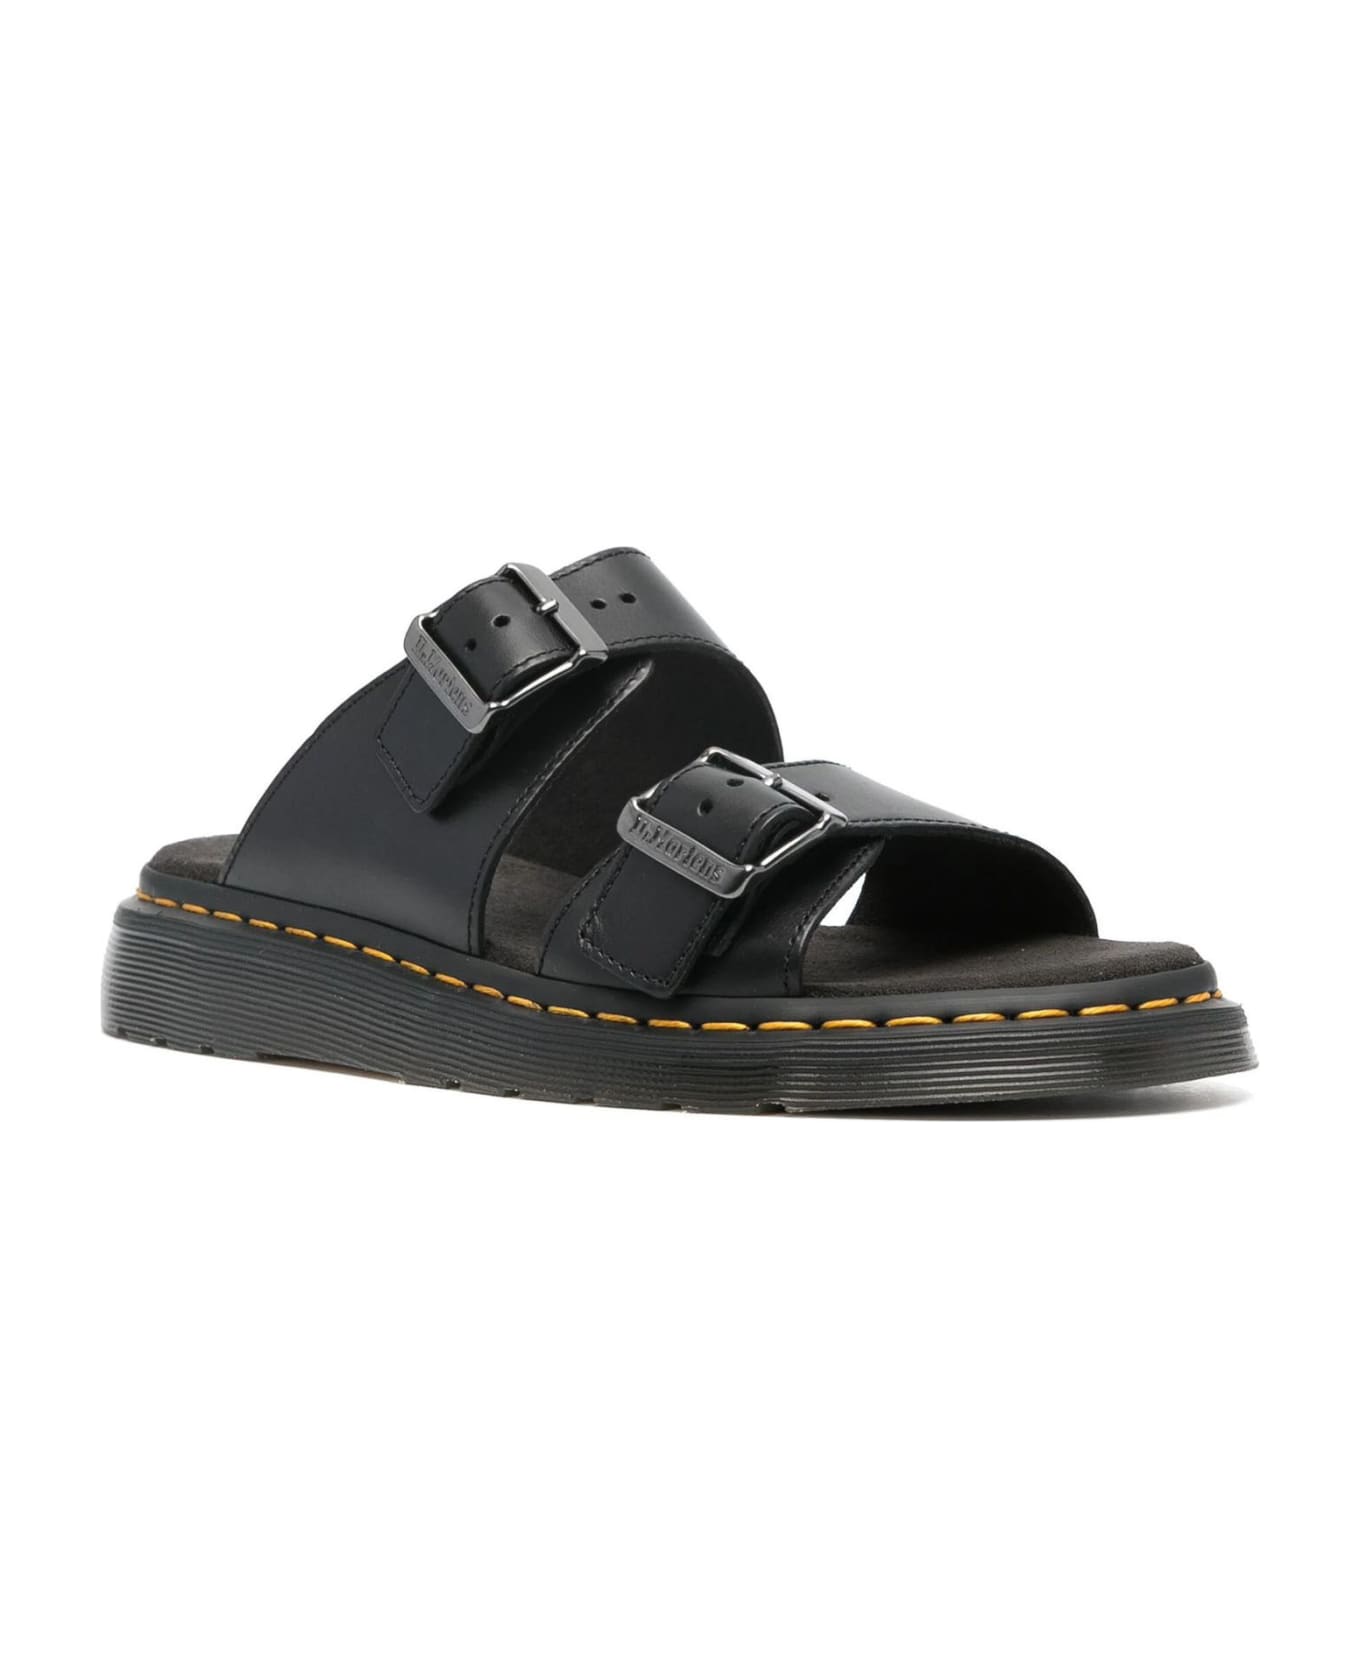 Dr. Martens Black Josef Leather Sandals - Black